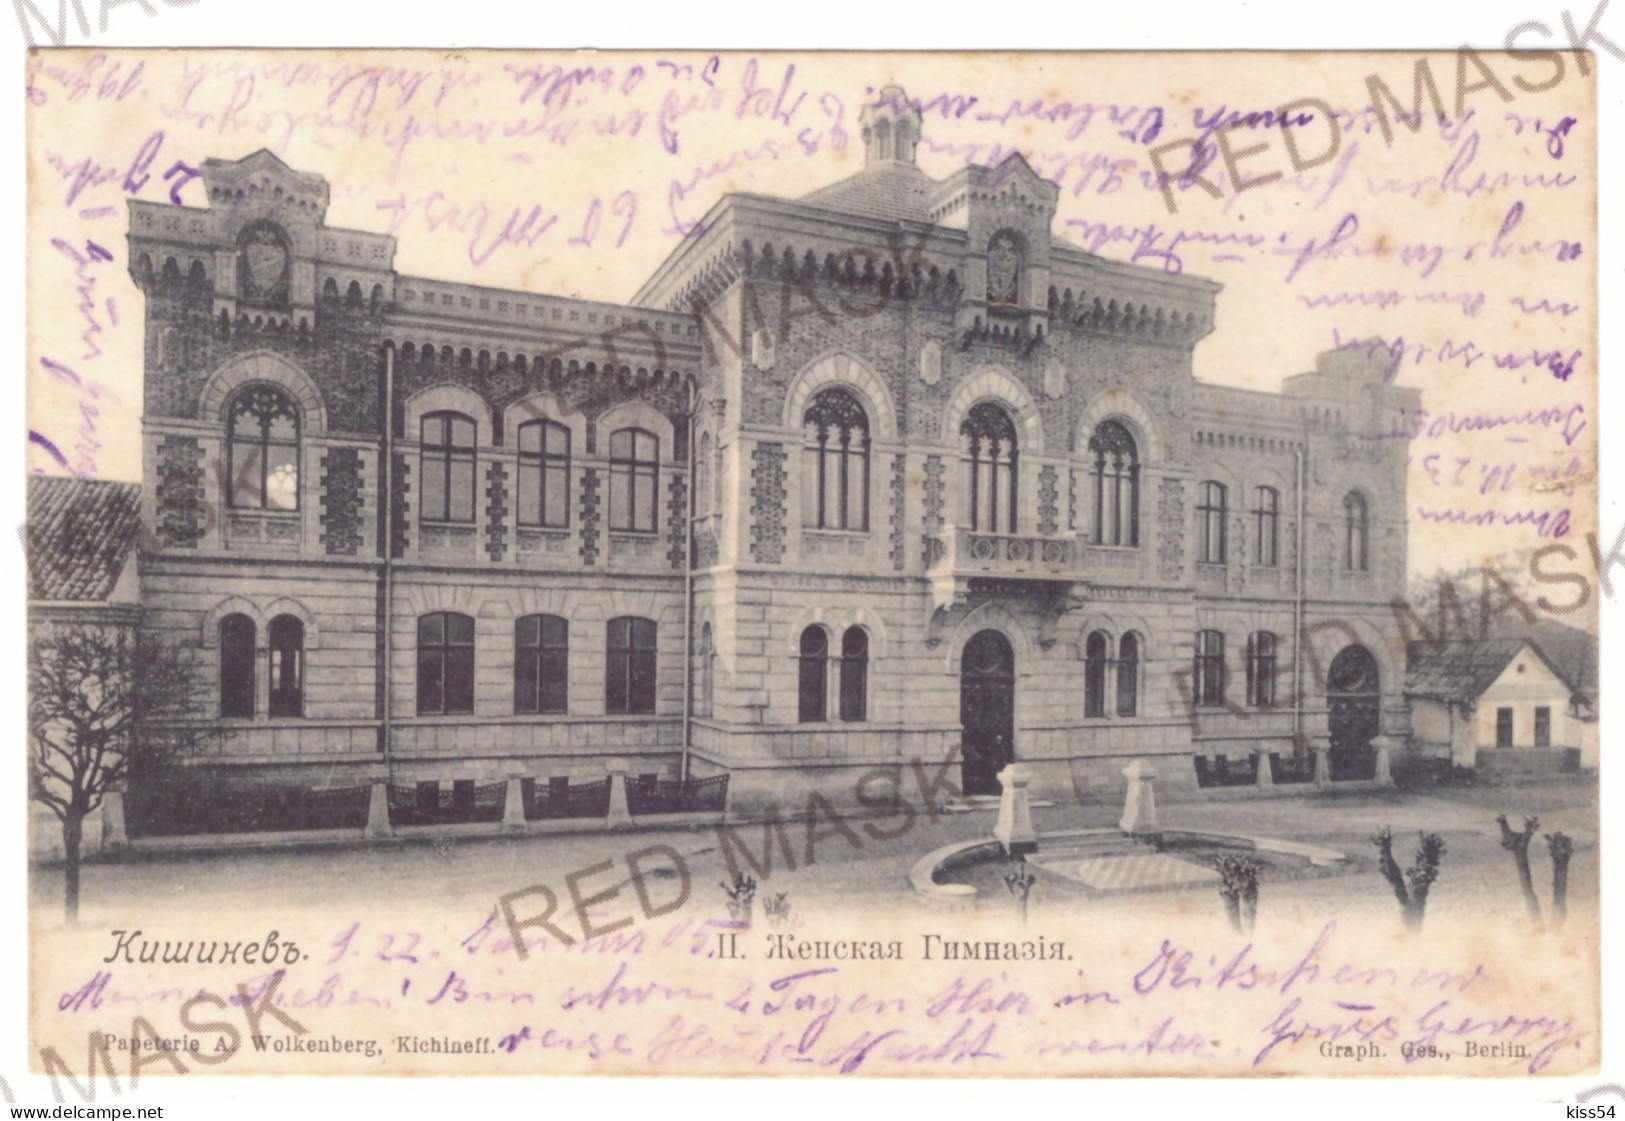 MOL 1 - 20109 CHISINAU, Moldova - Old Postcard - Used - 1905 - Moldova